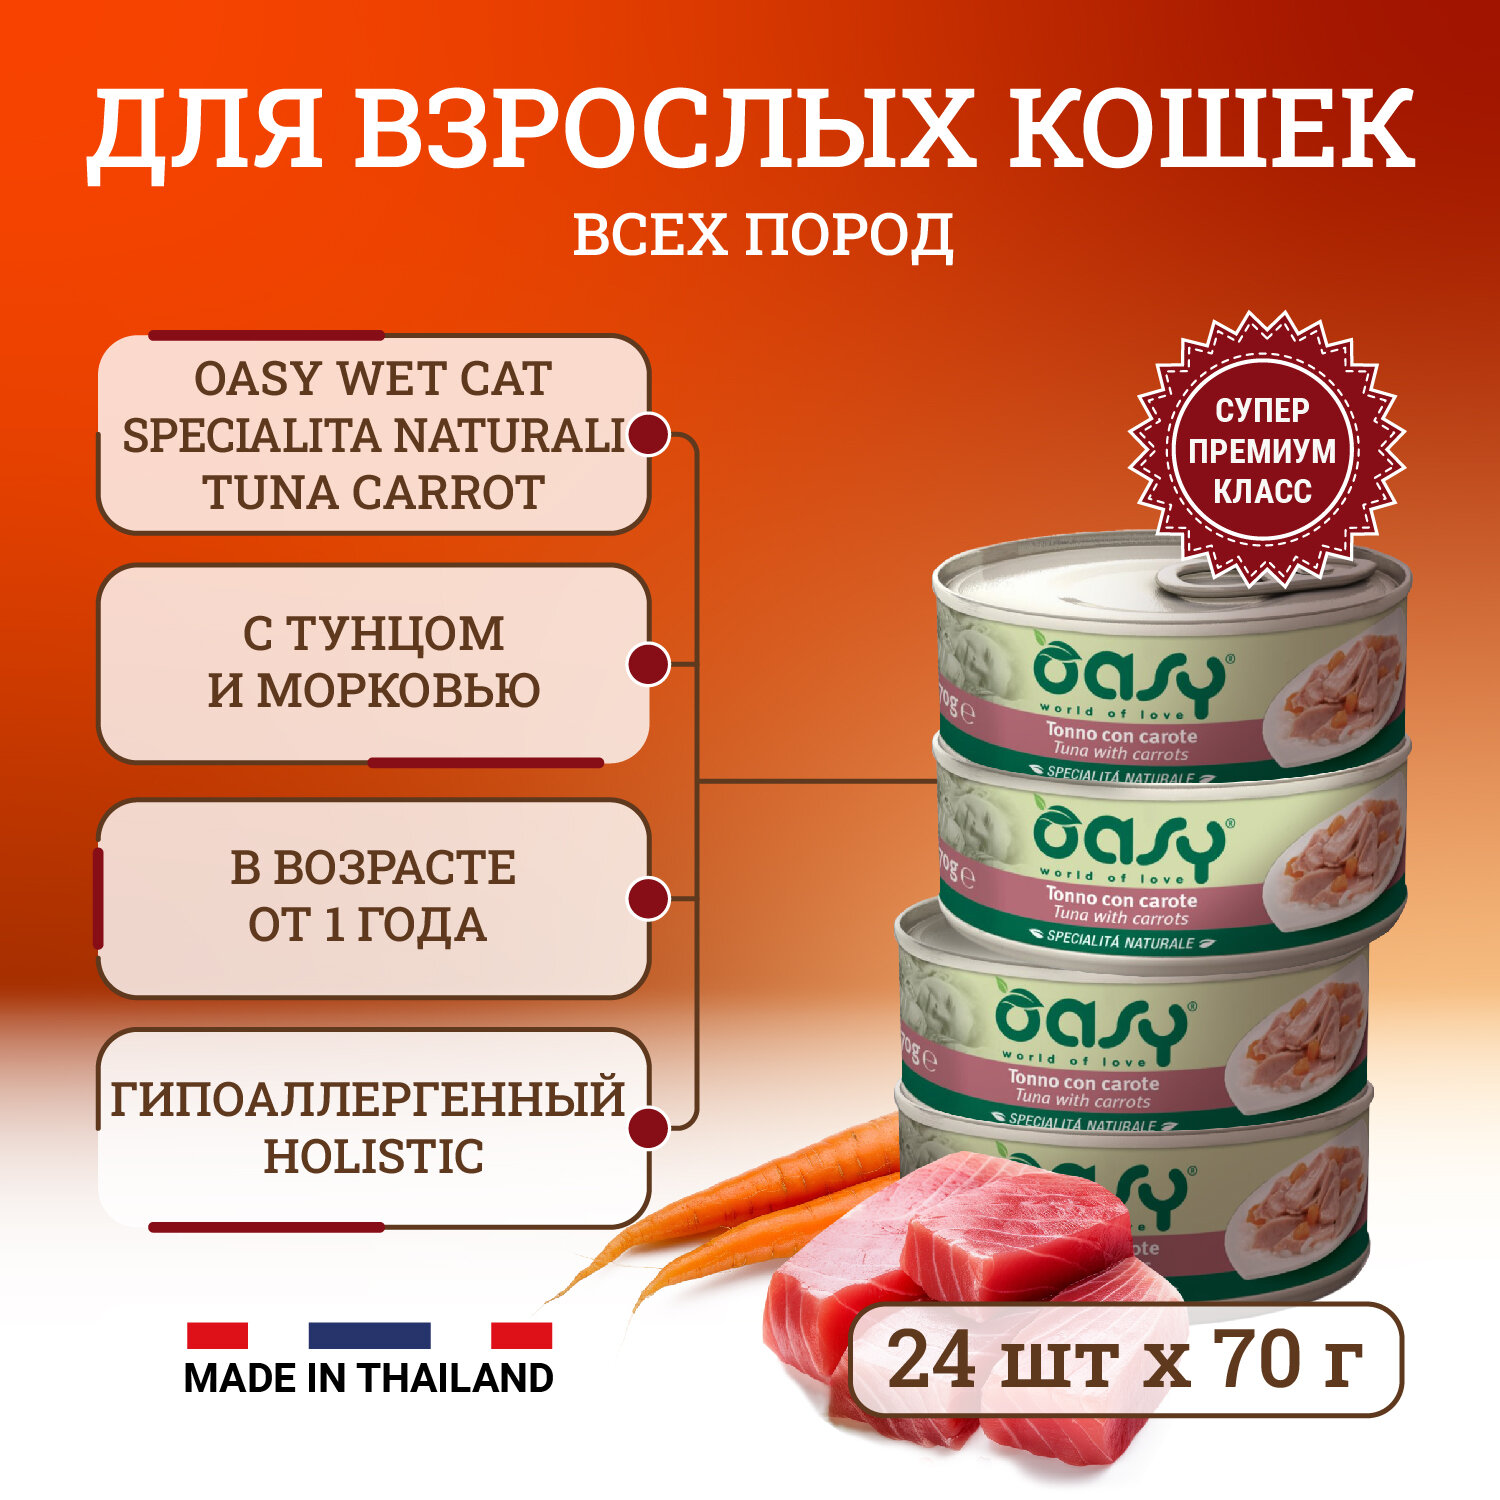 Oasy Wet Cat Specialita Naturali Tuna Carrot влажный корм для взрослых кошек, дополнительное питание с тунцом и морковью, в консервах - 70 г х 24 шт